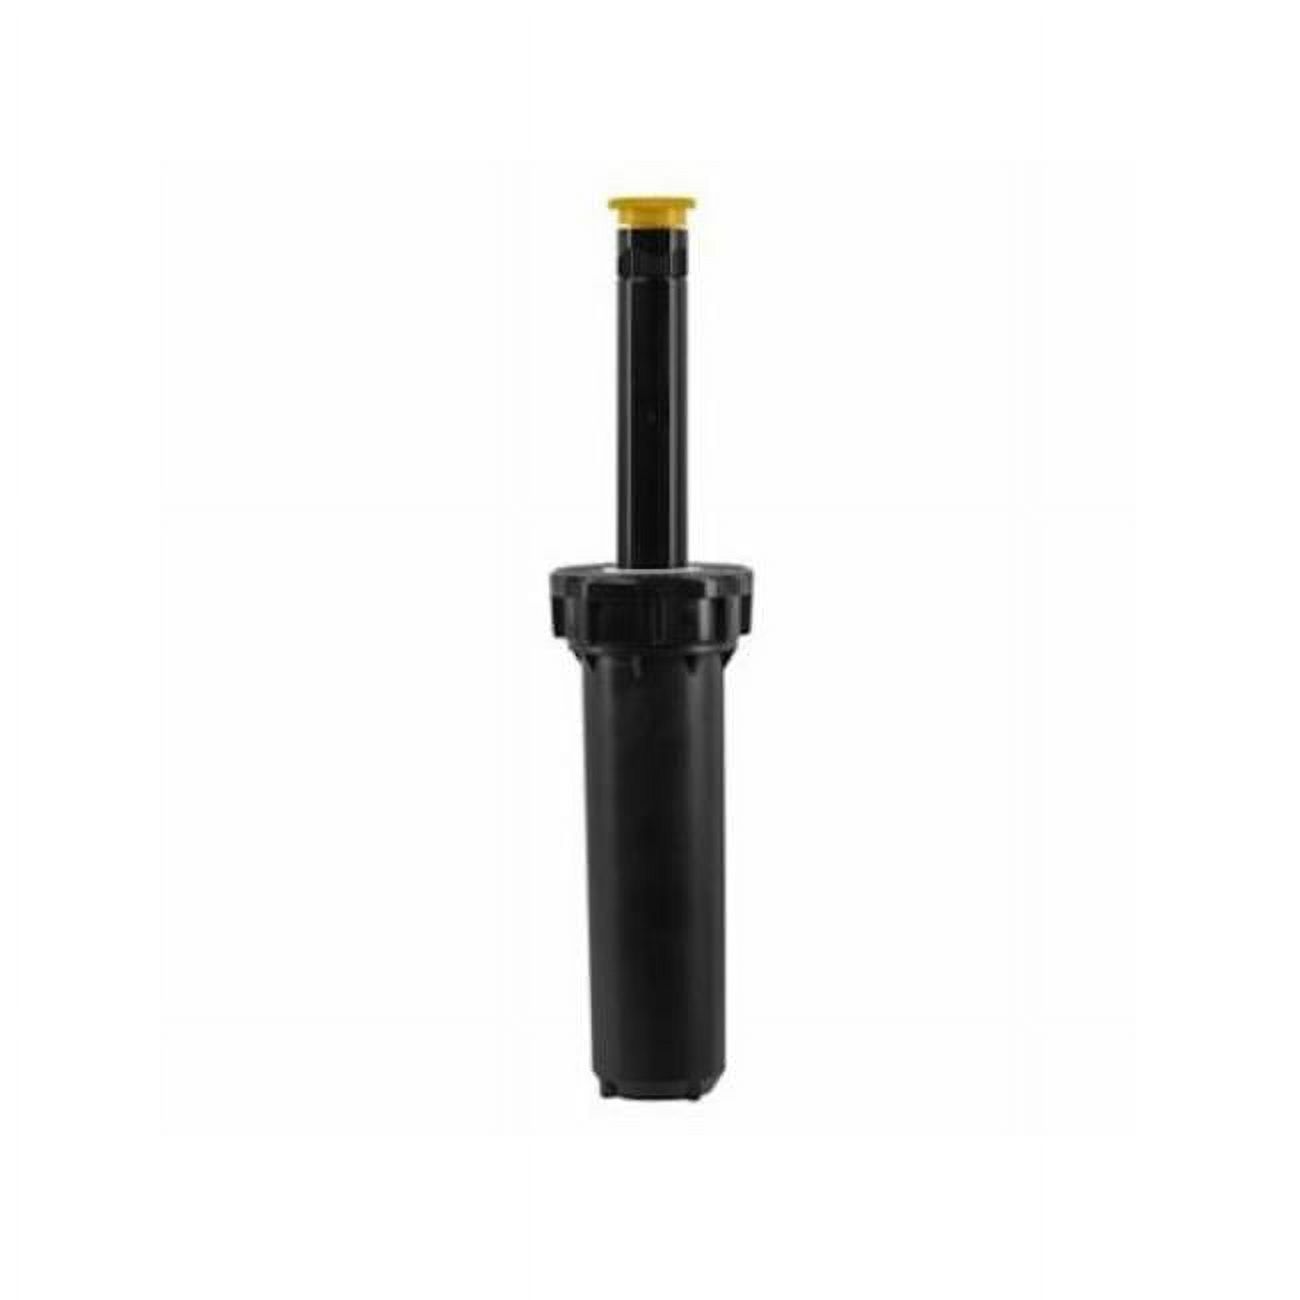 Orbit 80300 Adjustable Pop-Up Sprinkler, 2.25", Black, Plastic - image 1 of 1